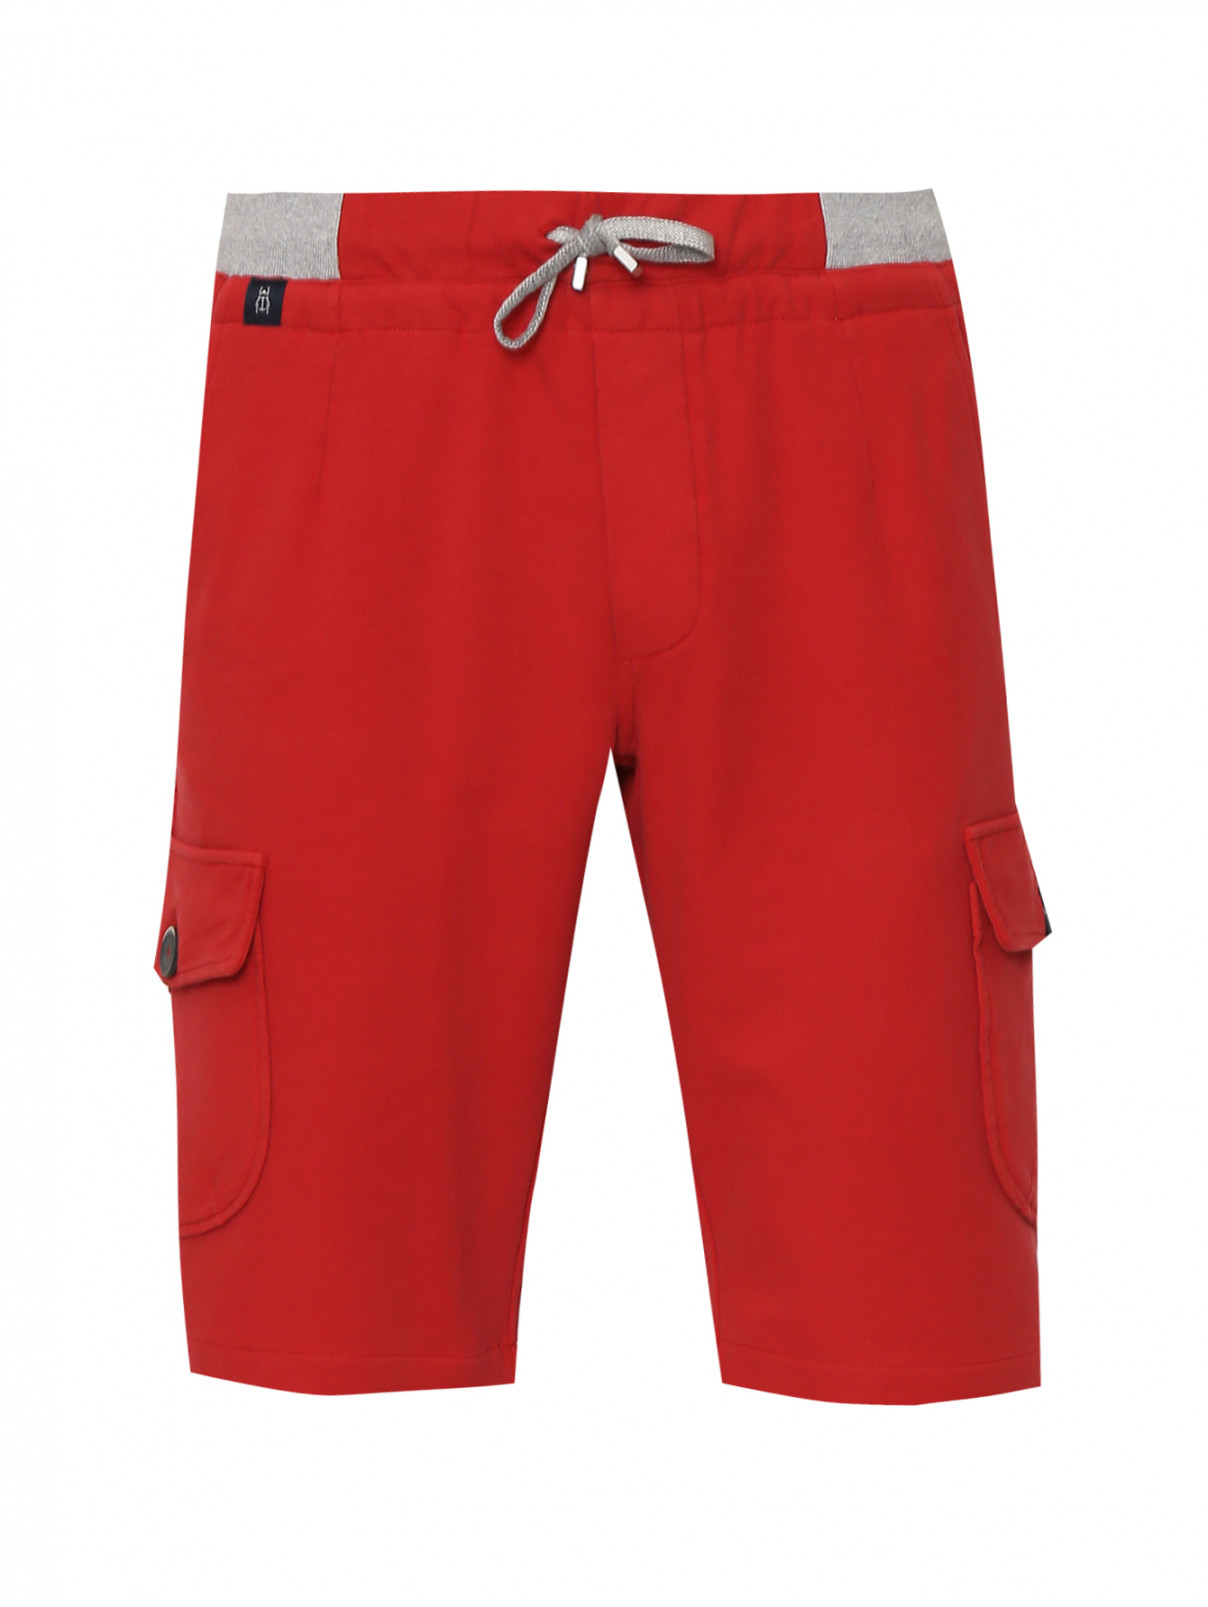 Шорты из хлопка на резинке с карманами Capobianco  –  Общий вид  – Цвет:  Красный